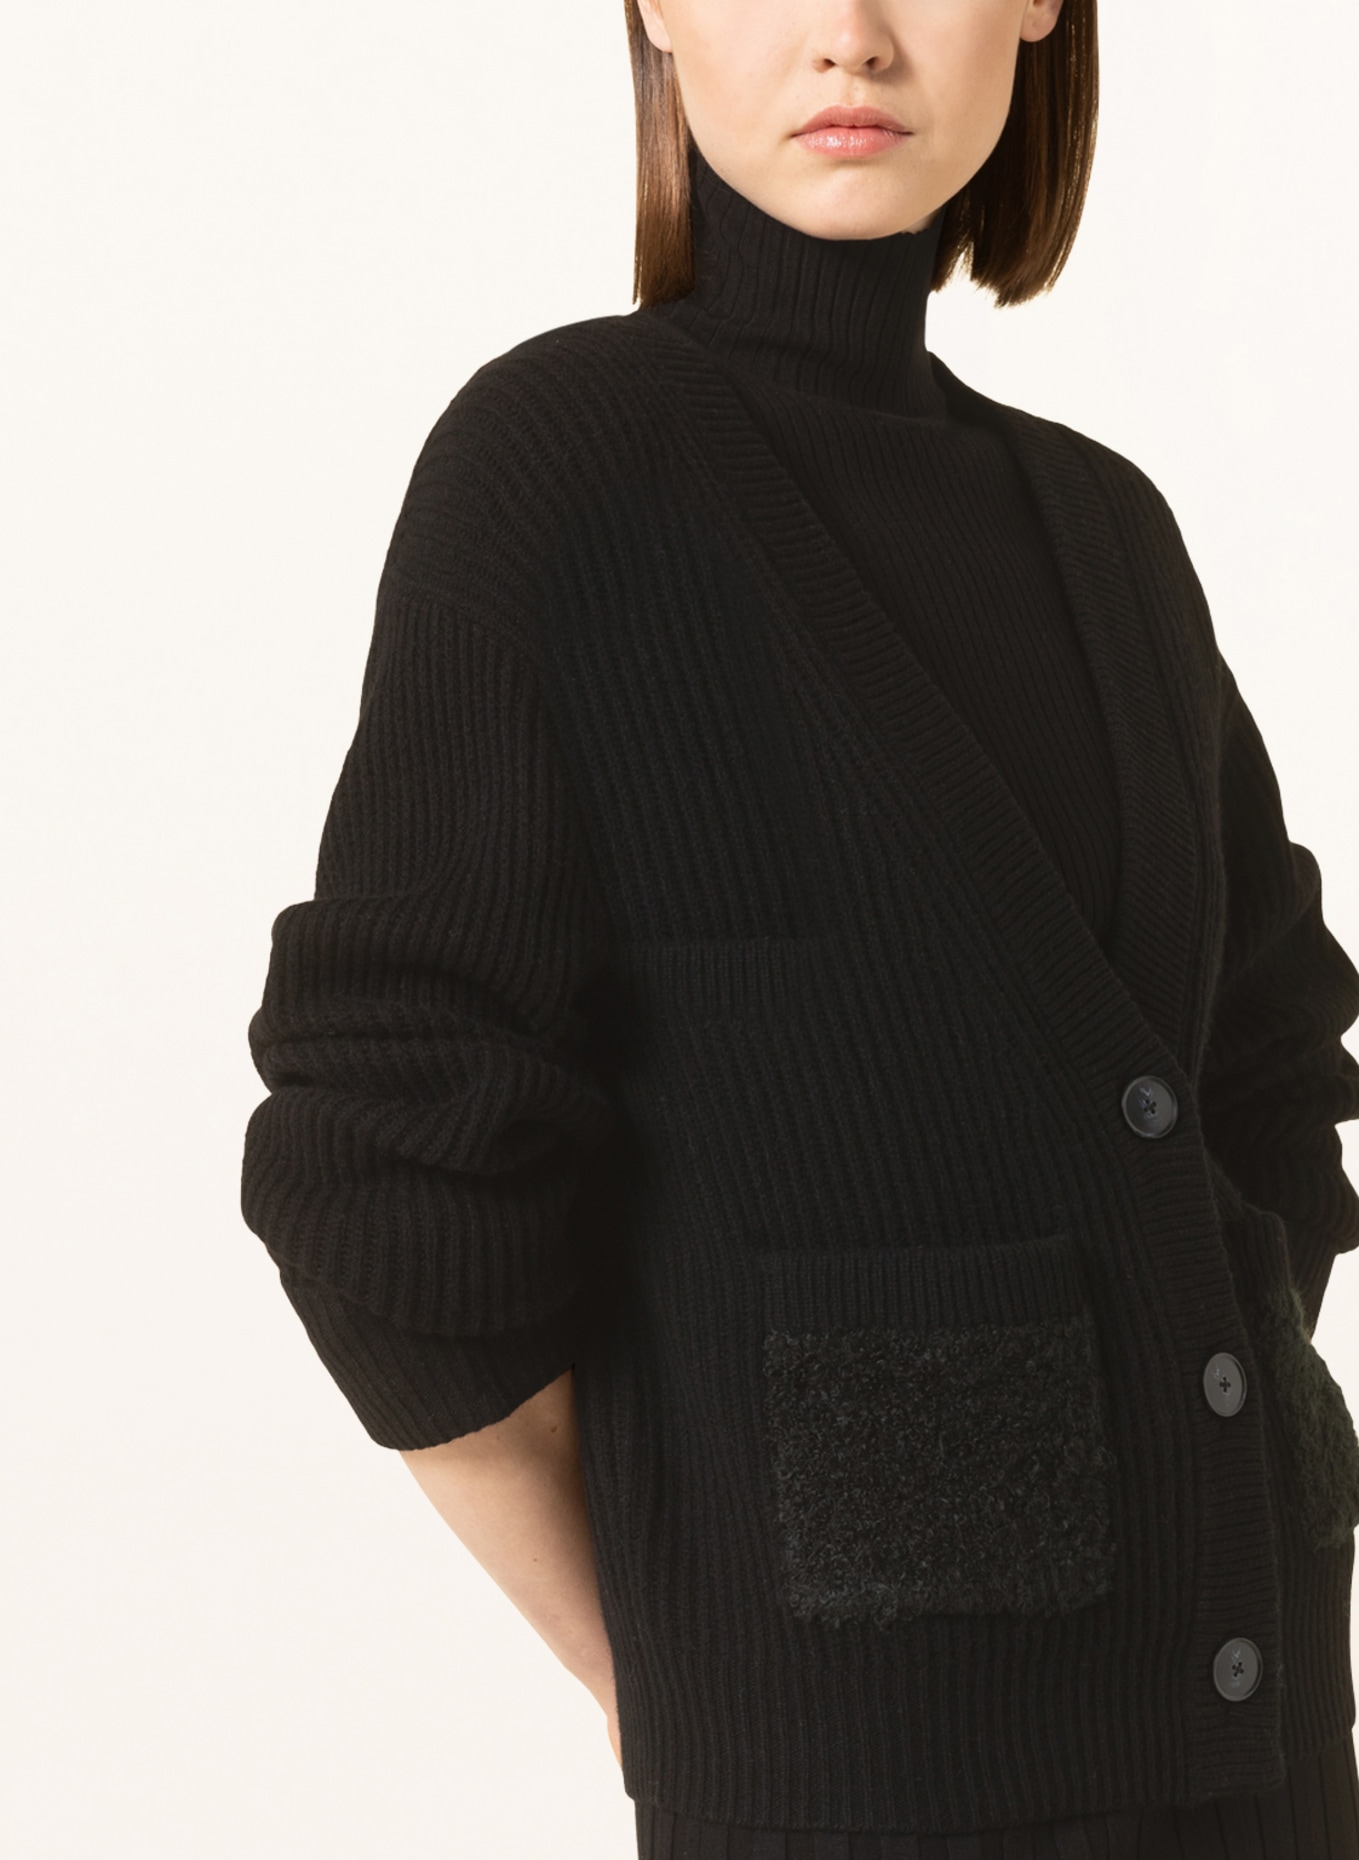 MRS & HUGS Cardigan in merino wool, Color: BLACK (Image 4)